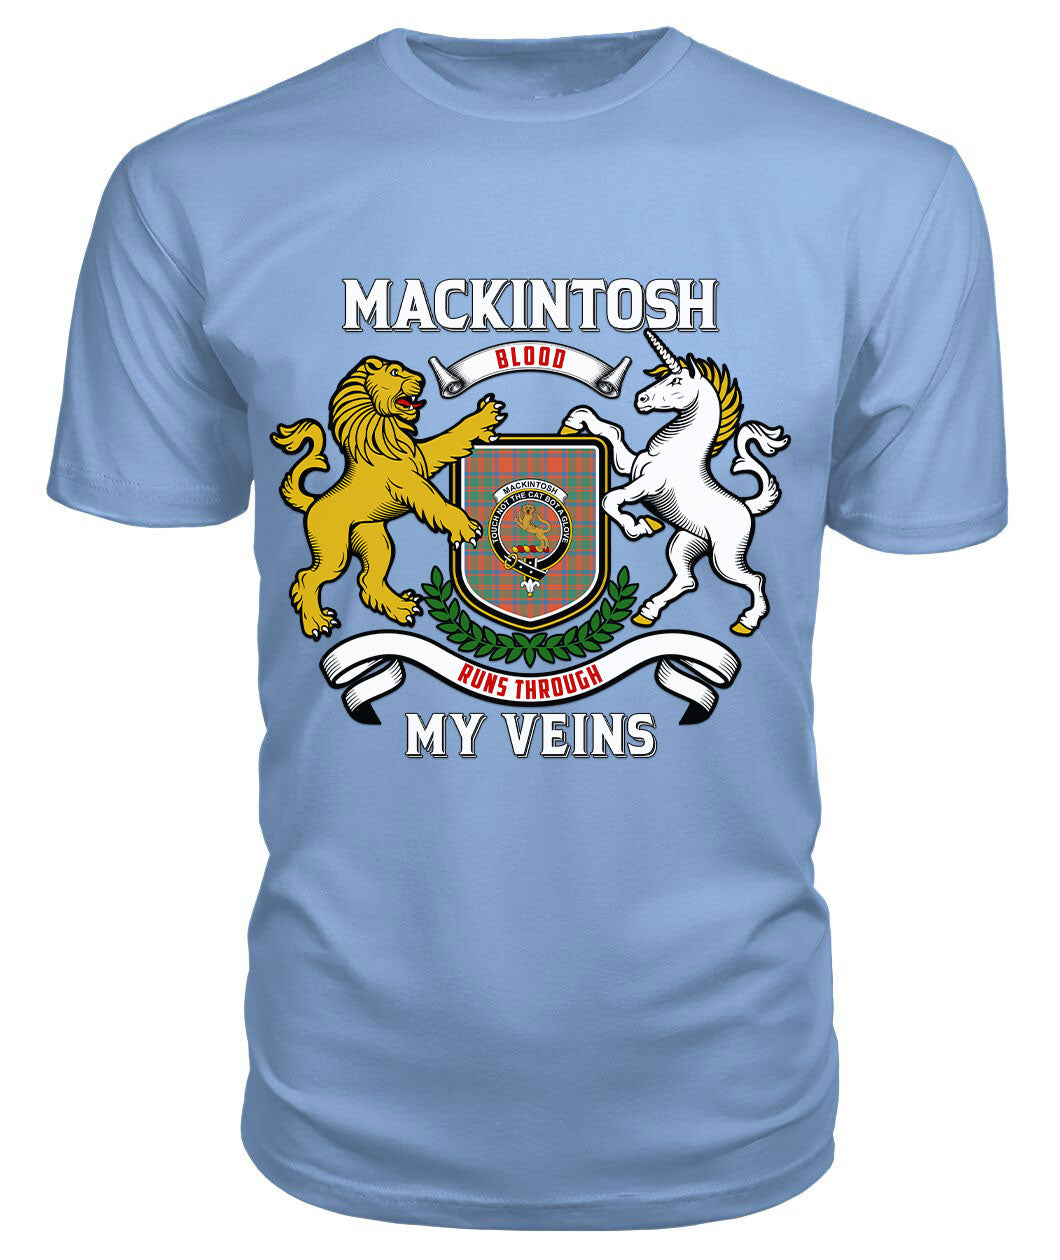 MacKintosh Ancient Tartan Crest 2D T-shirt - Blood Runs Through My Veins Style